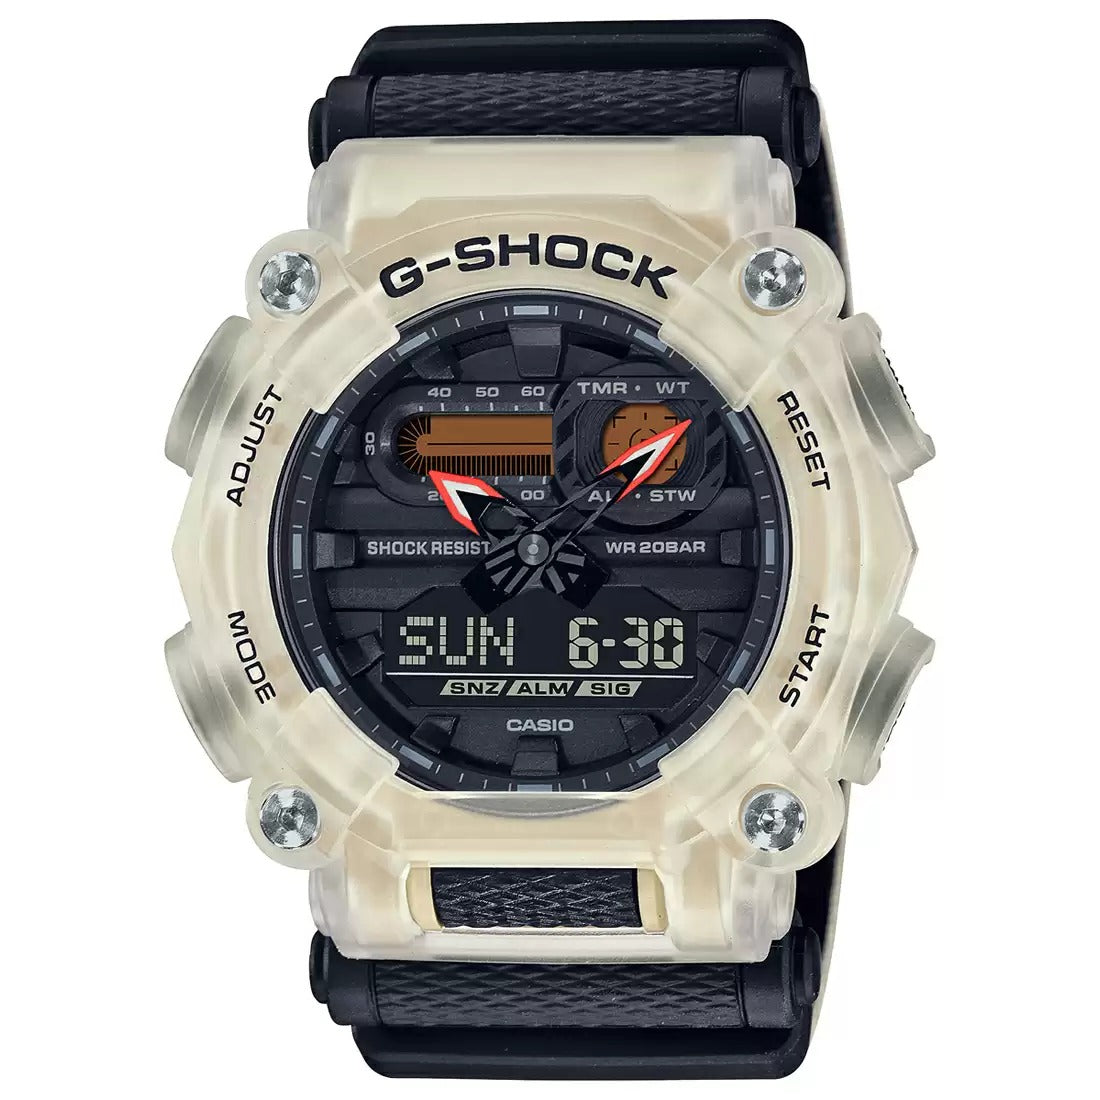 कैसियो G शॉक GA 900TS 4ADR G1167 ऑरेंज एनालॉग डिजिटल पुरुषों की घड़ी